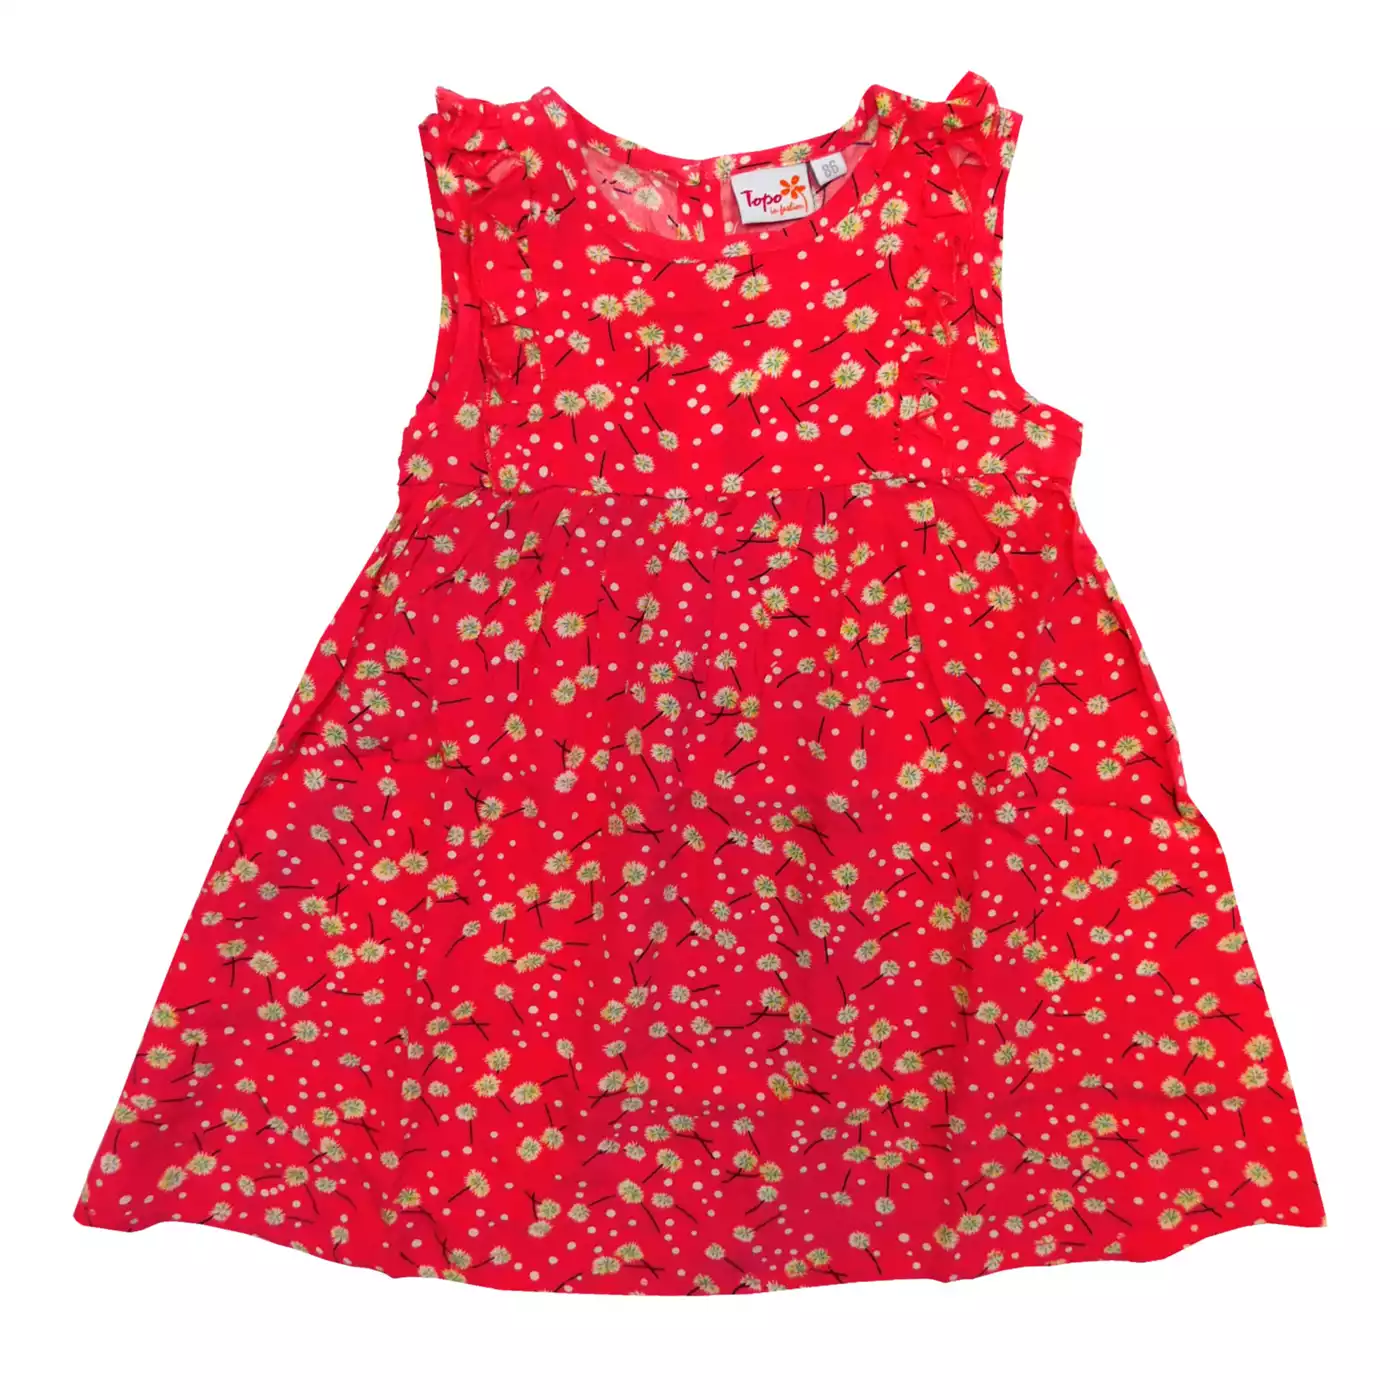 Kleid Blumen Topo Rot M2006580324114 3